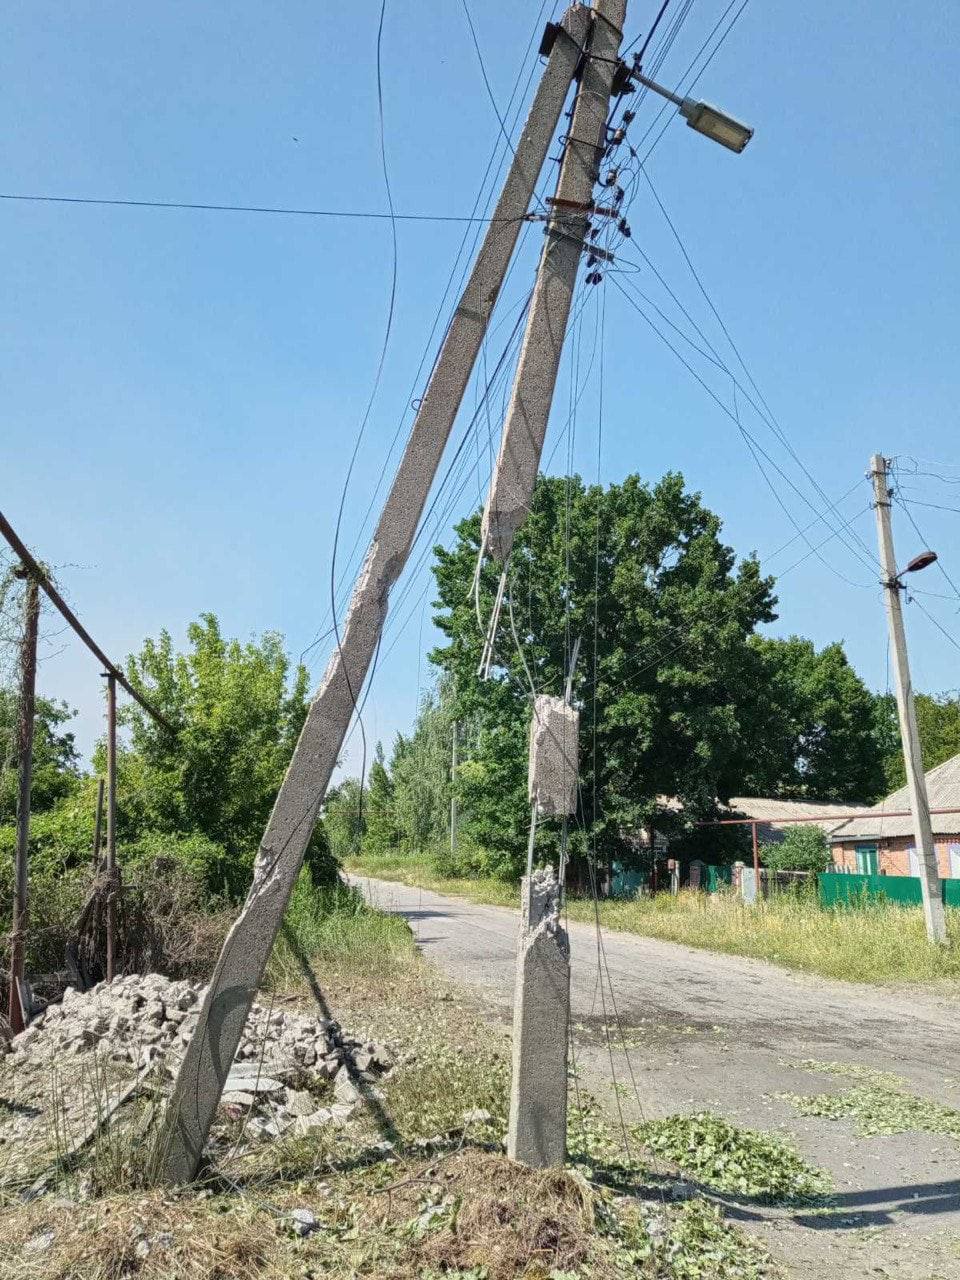 Благодаря успешным действиям ВСУ, энергетики смогли вернуть свет для 4 тысяч семей в Донецкой области